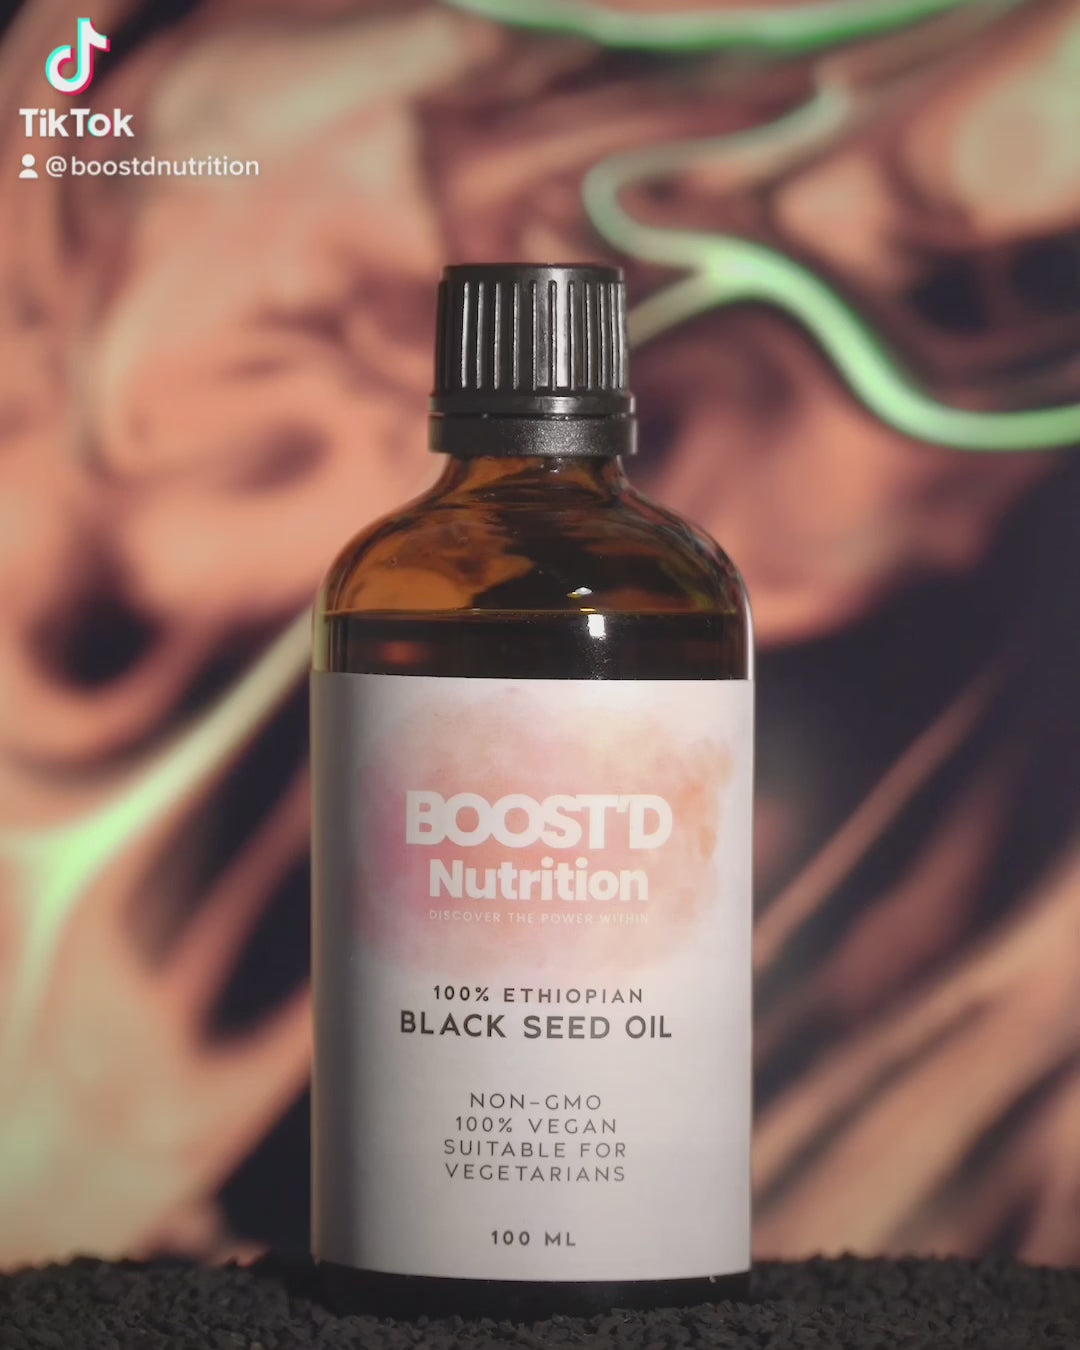 BOOST’D Black Seed Oil (100ml) - BOOSTD Nutrition - black seed oil, black seeds, black seed, nigella sativa, nigella